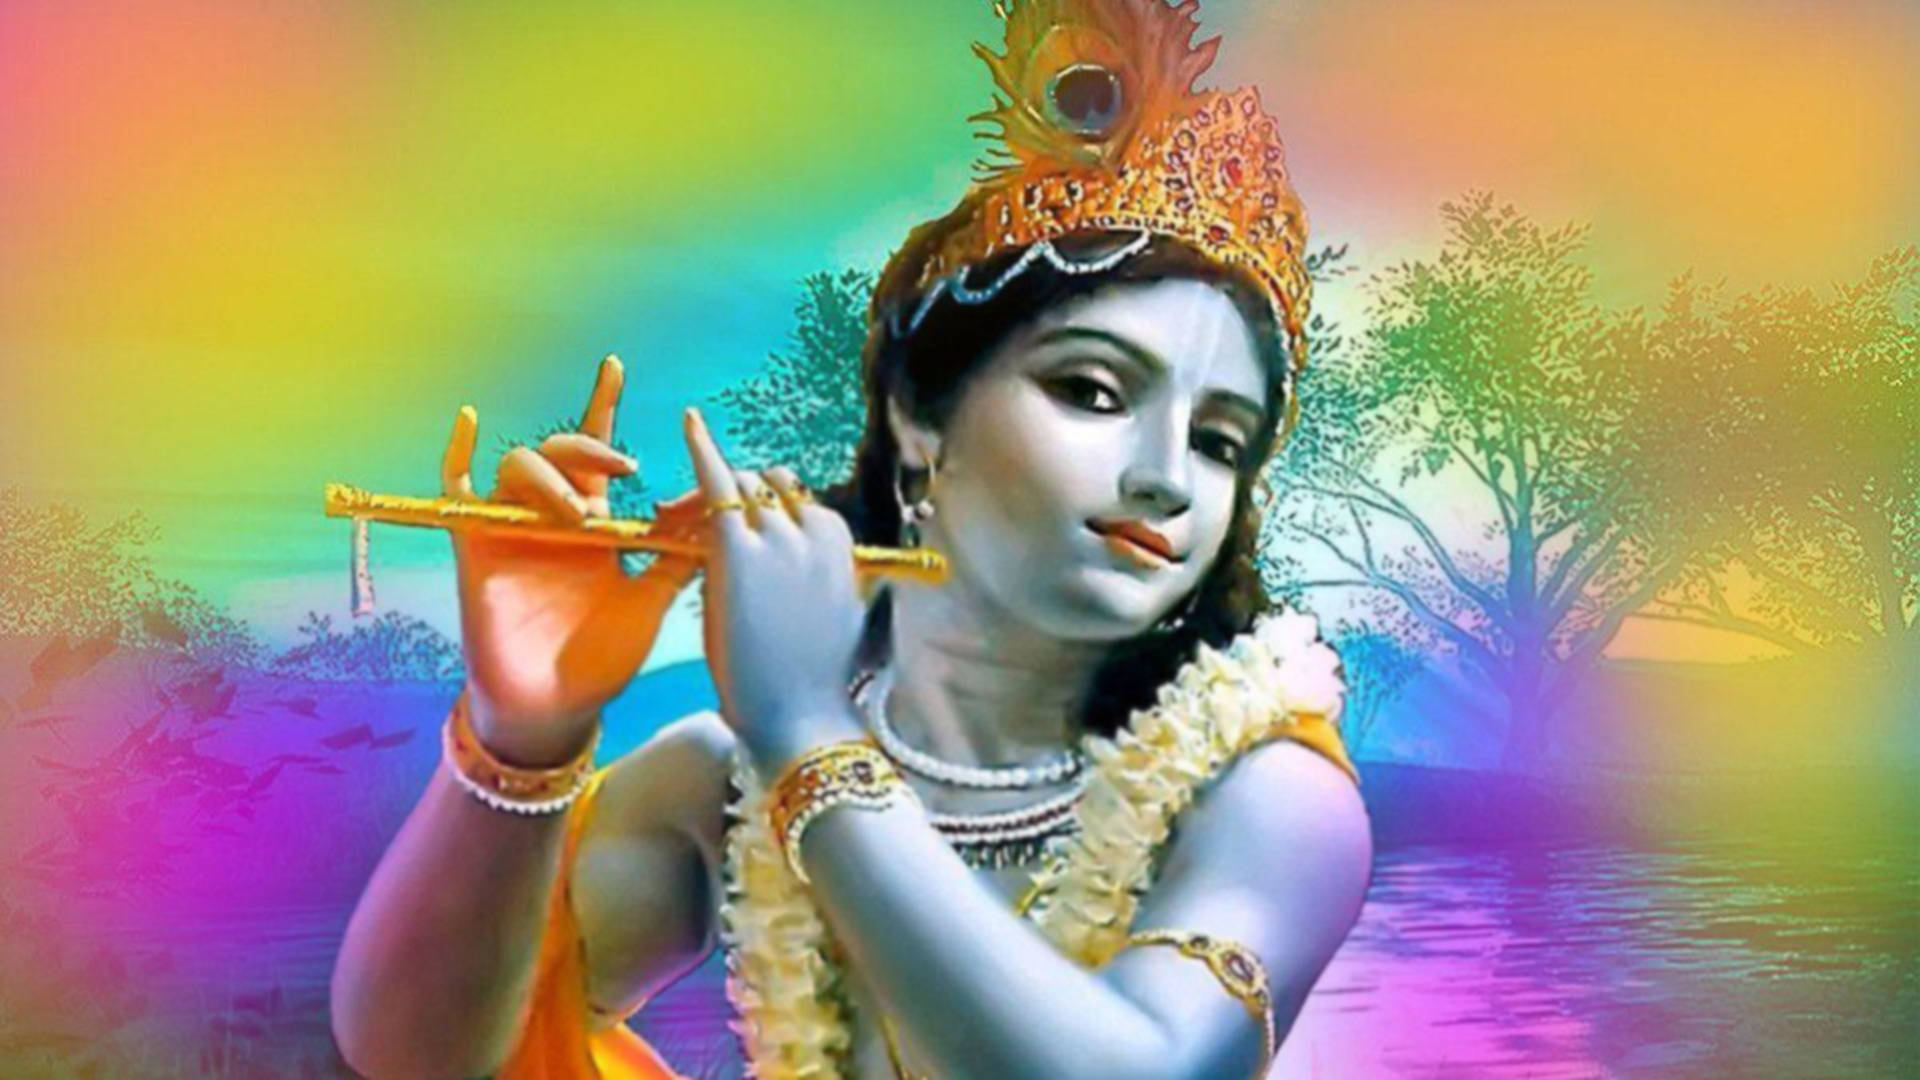 Beautiful Krishna Rainbow Digital Art Wallpaper